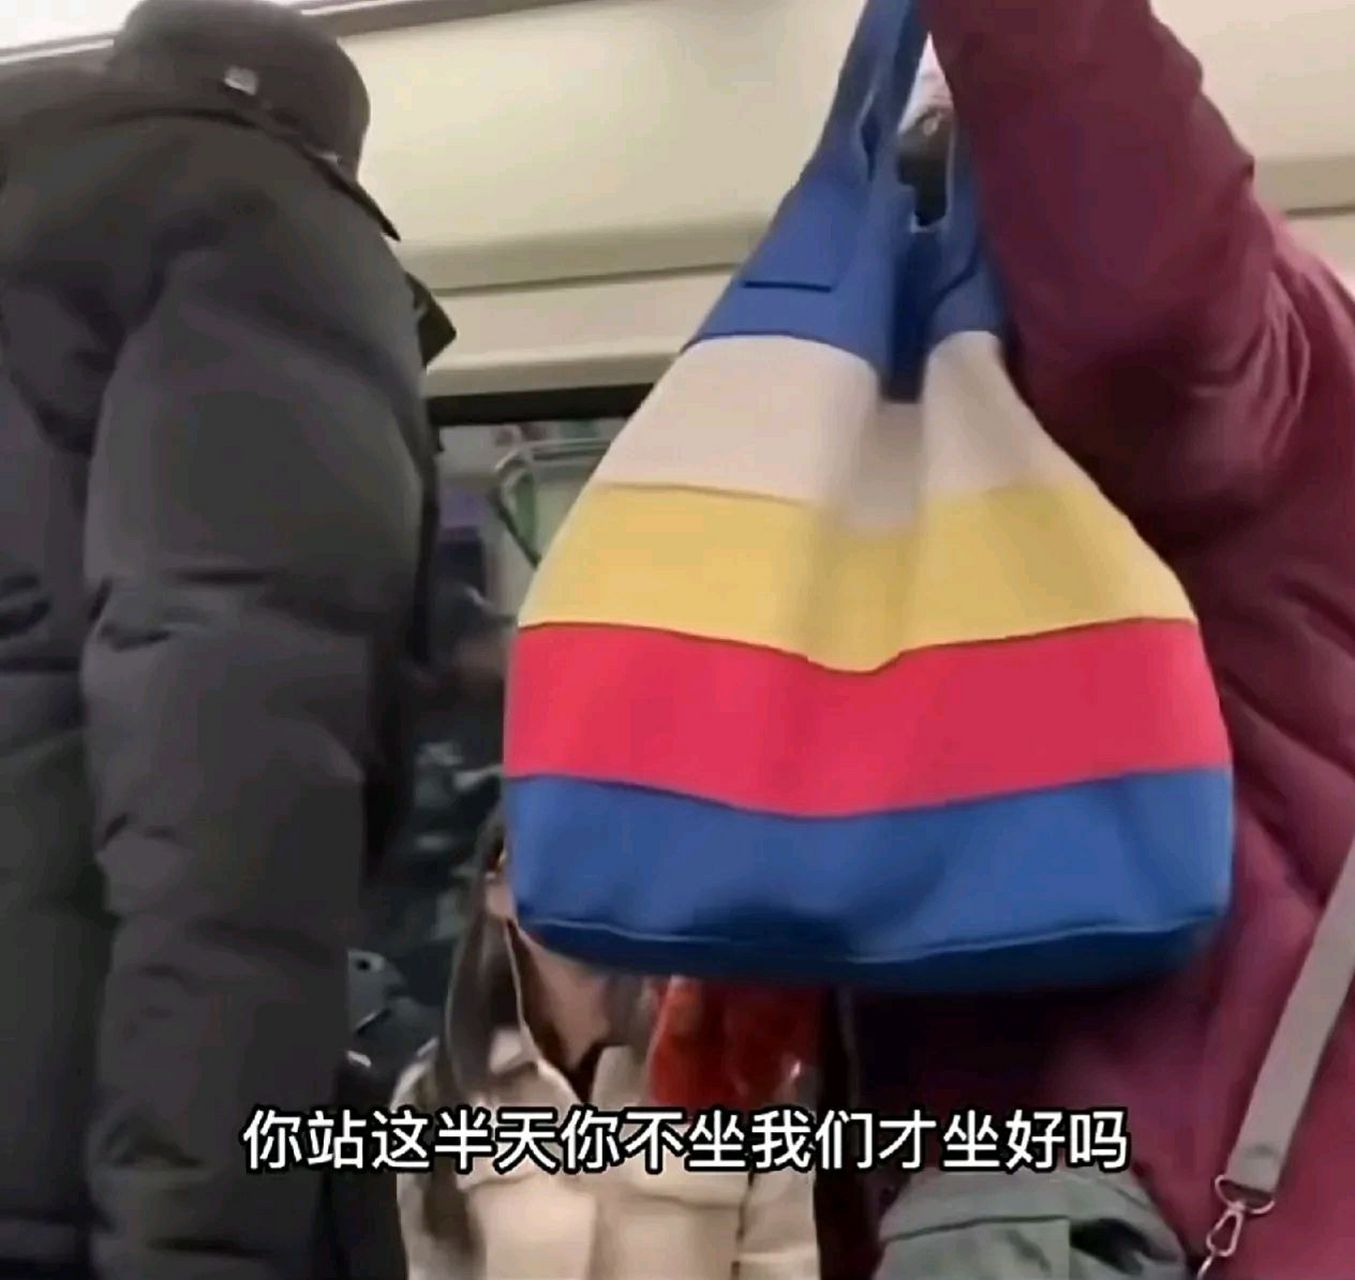 北京地铁上一位大爷语气严厉的对着一对年轻人道 到北京要懂北京人的